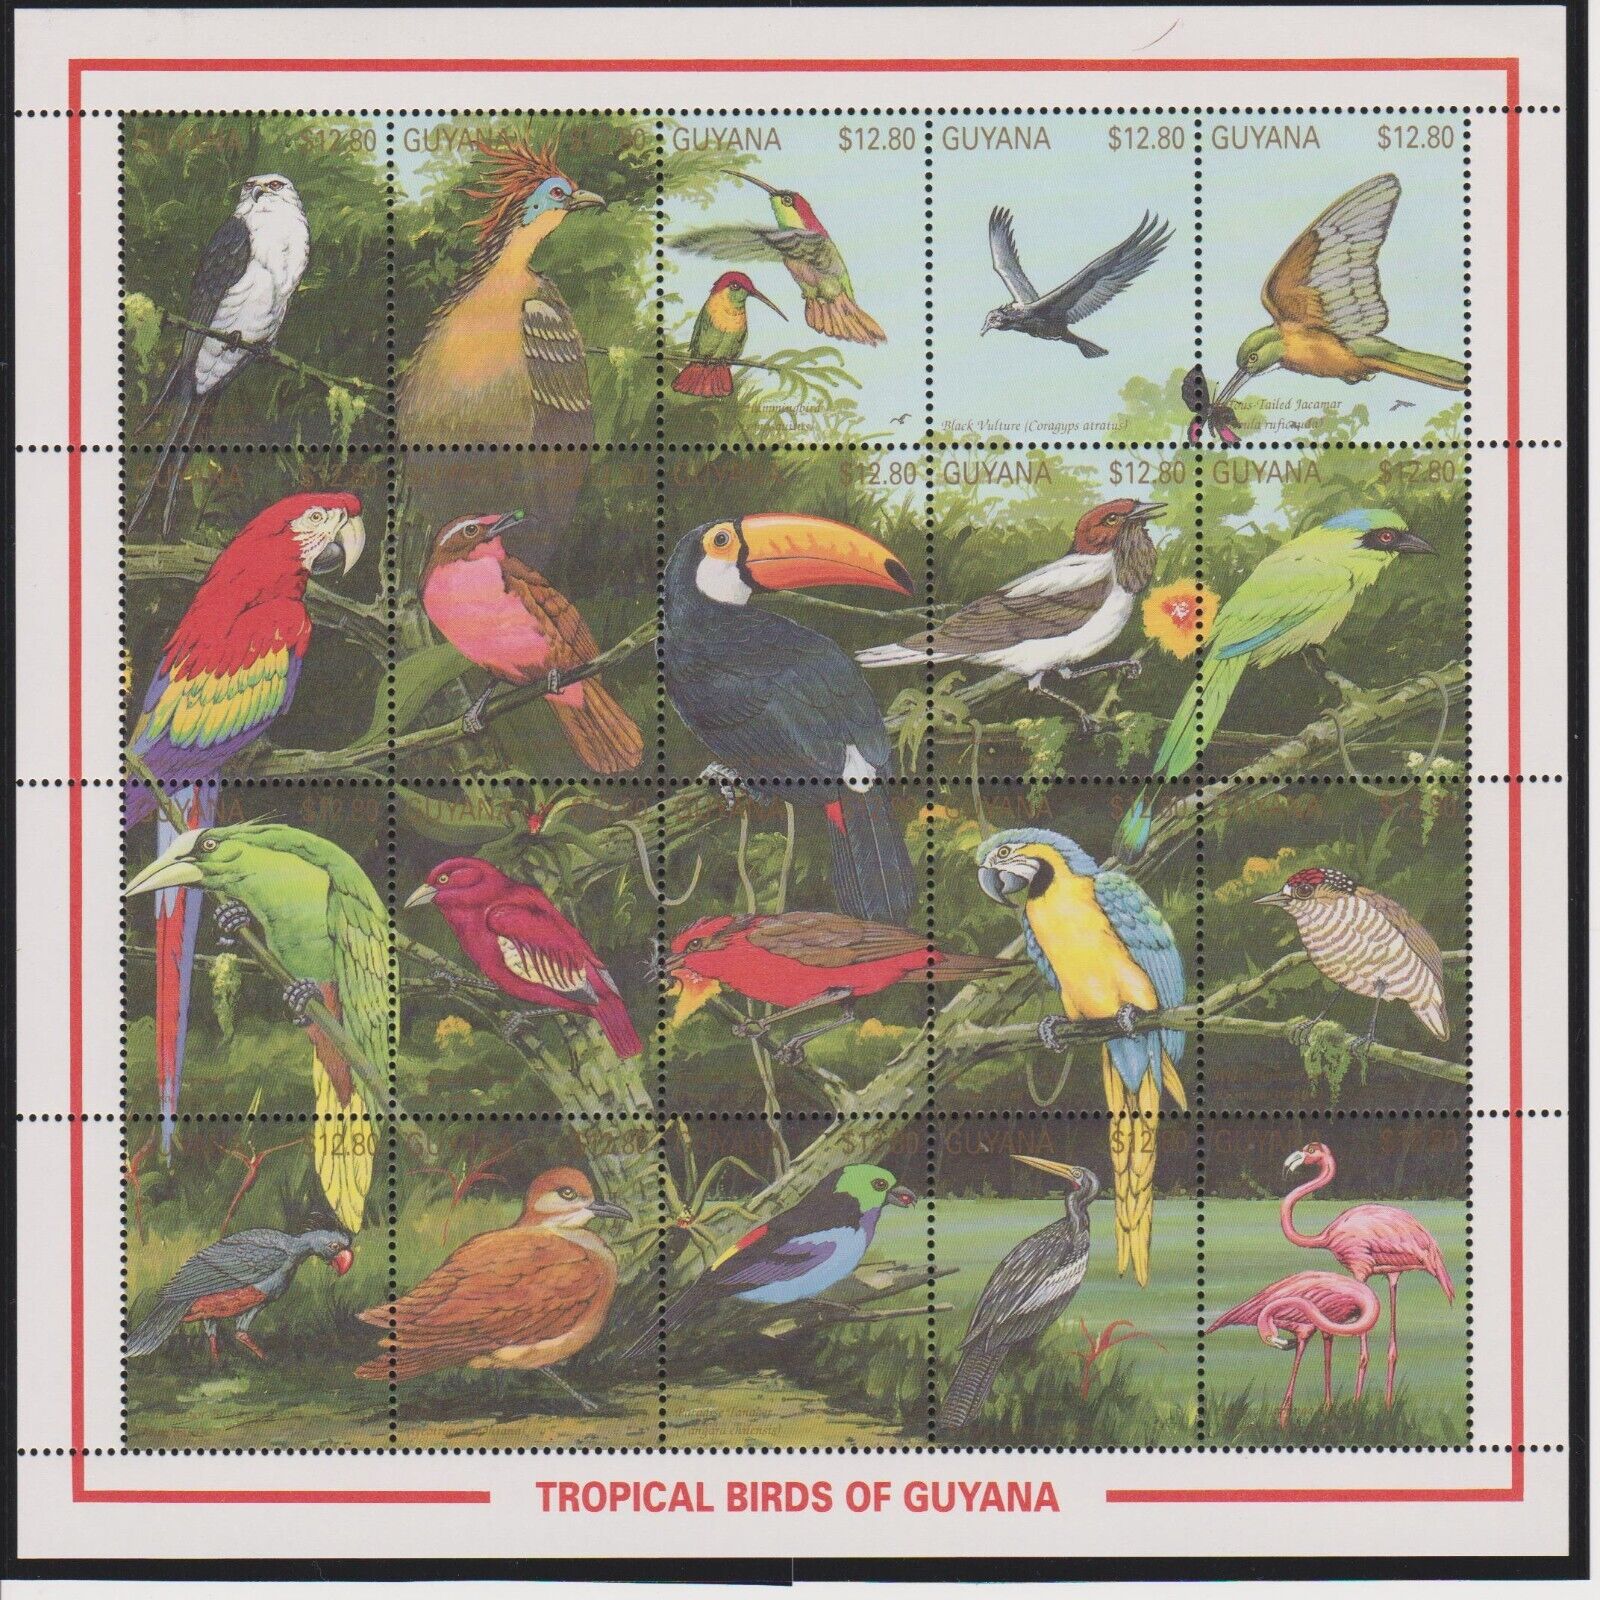 Guyana Tropical Birds Of Guyana Sheet Of 20 Mnh Scott 2380